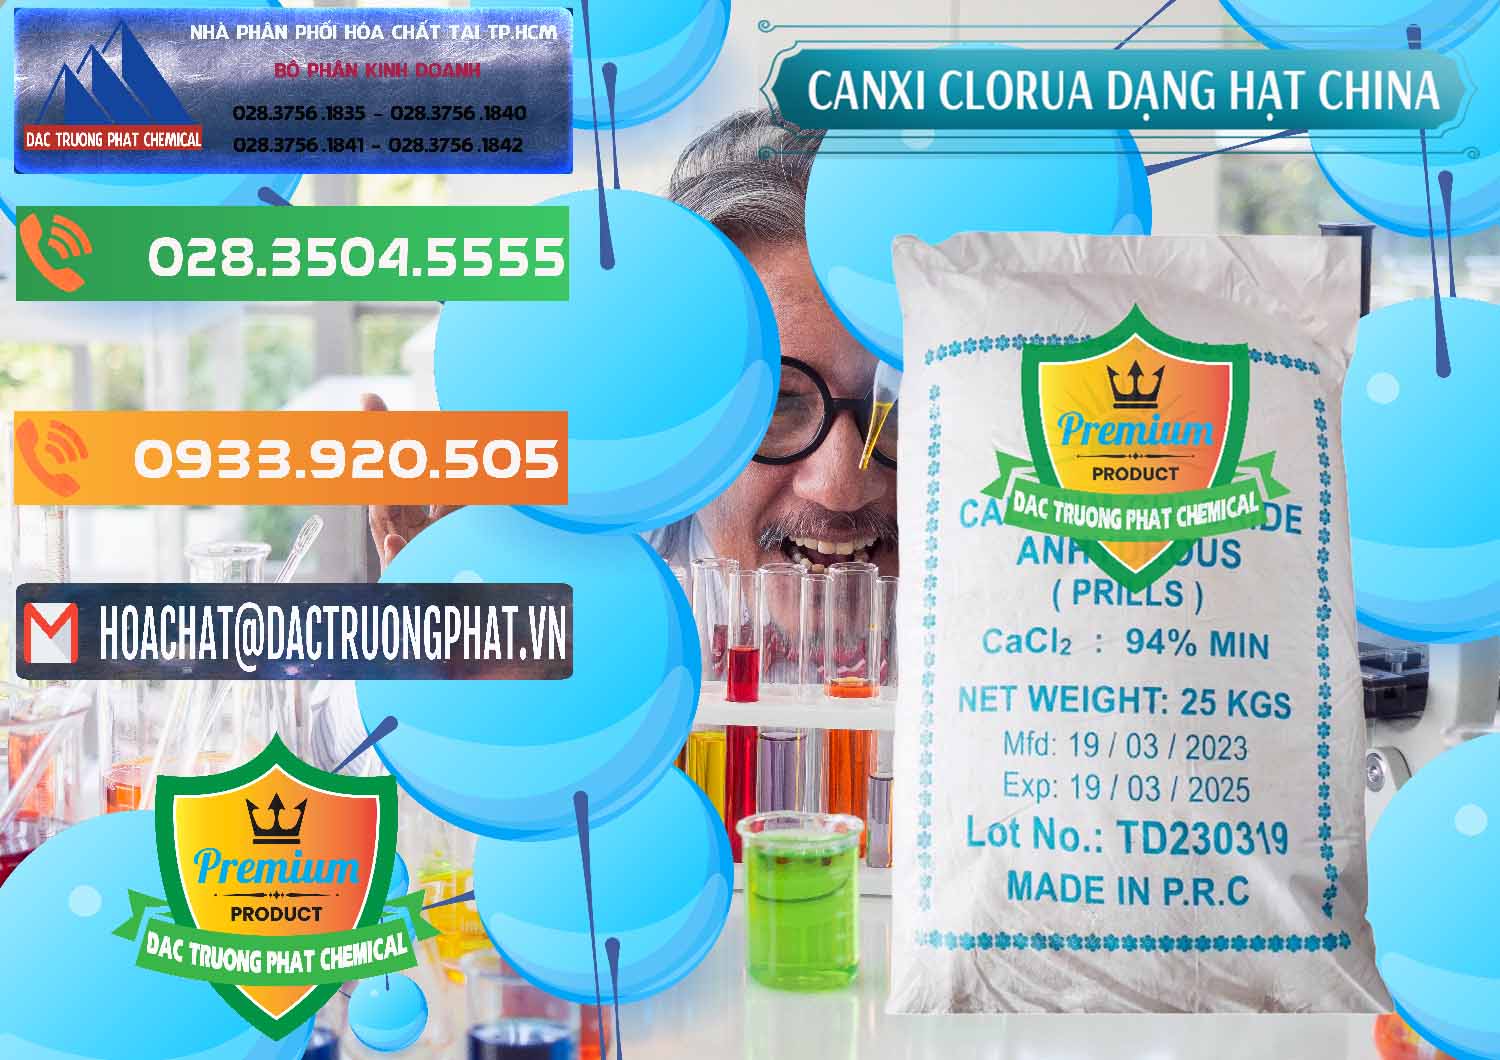 Nơi chuyên kinh doanh & bán CaCl2 – Canxi Clorua 94% Dạng Hạt Trung Quốc China - 0373 - Cty phân phối ( cung cấp ) hóa chất tại TP.HCM - hoachatxulynuoc.com.vn